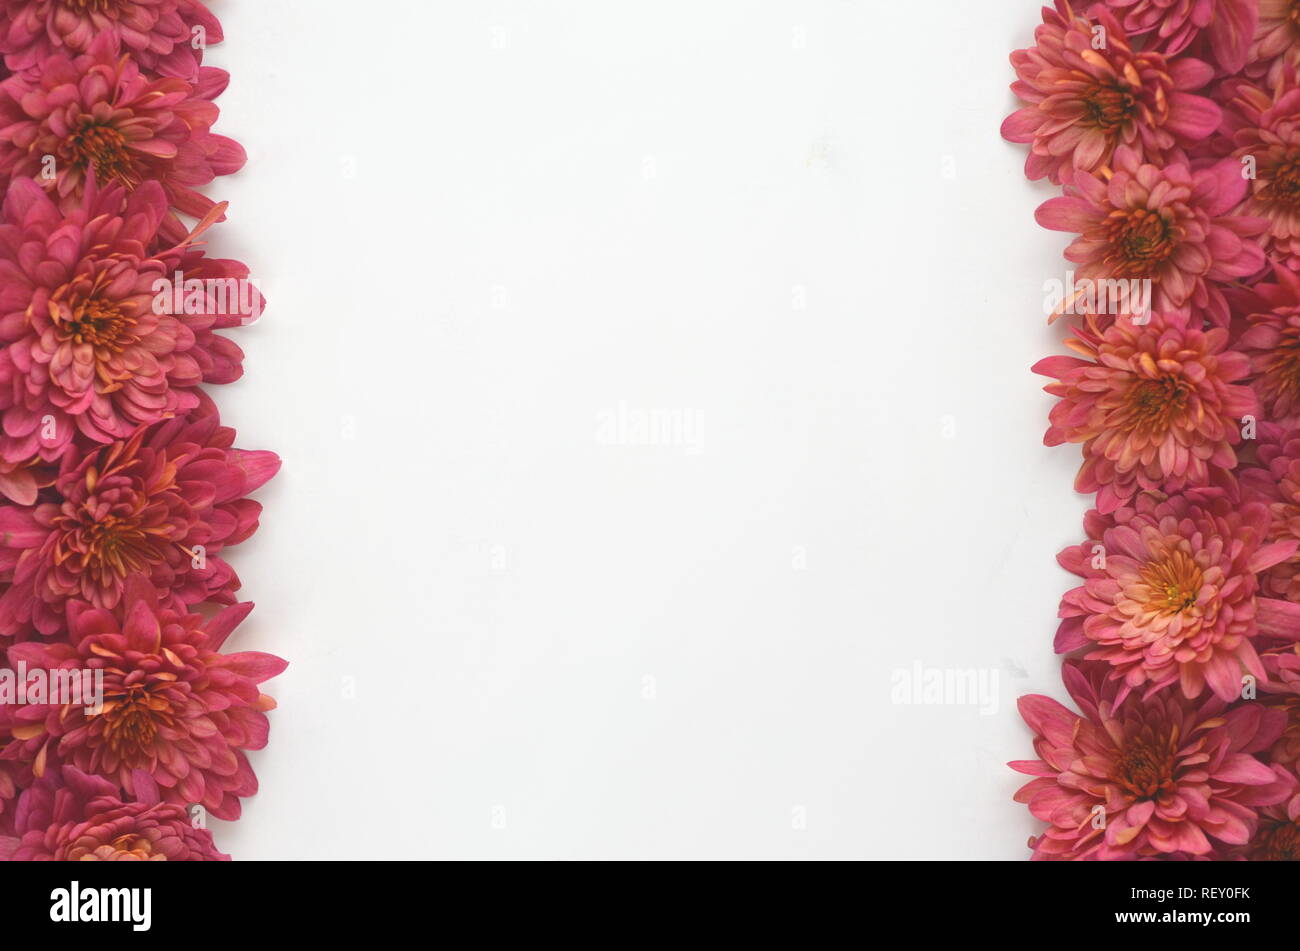 Automne Automne fond floral rouge profond avec chrysantemums sur fond blanc avec l'exemplaire de l'espace. Maquette de carte de vœux et de frontière. Espace de travail de bureau télévision mise en page. Banque D'Images